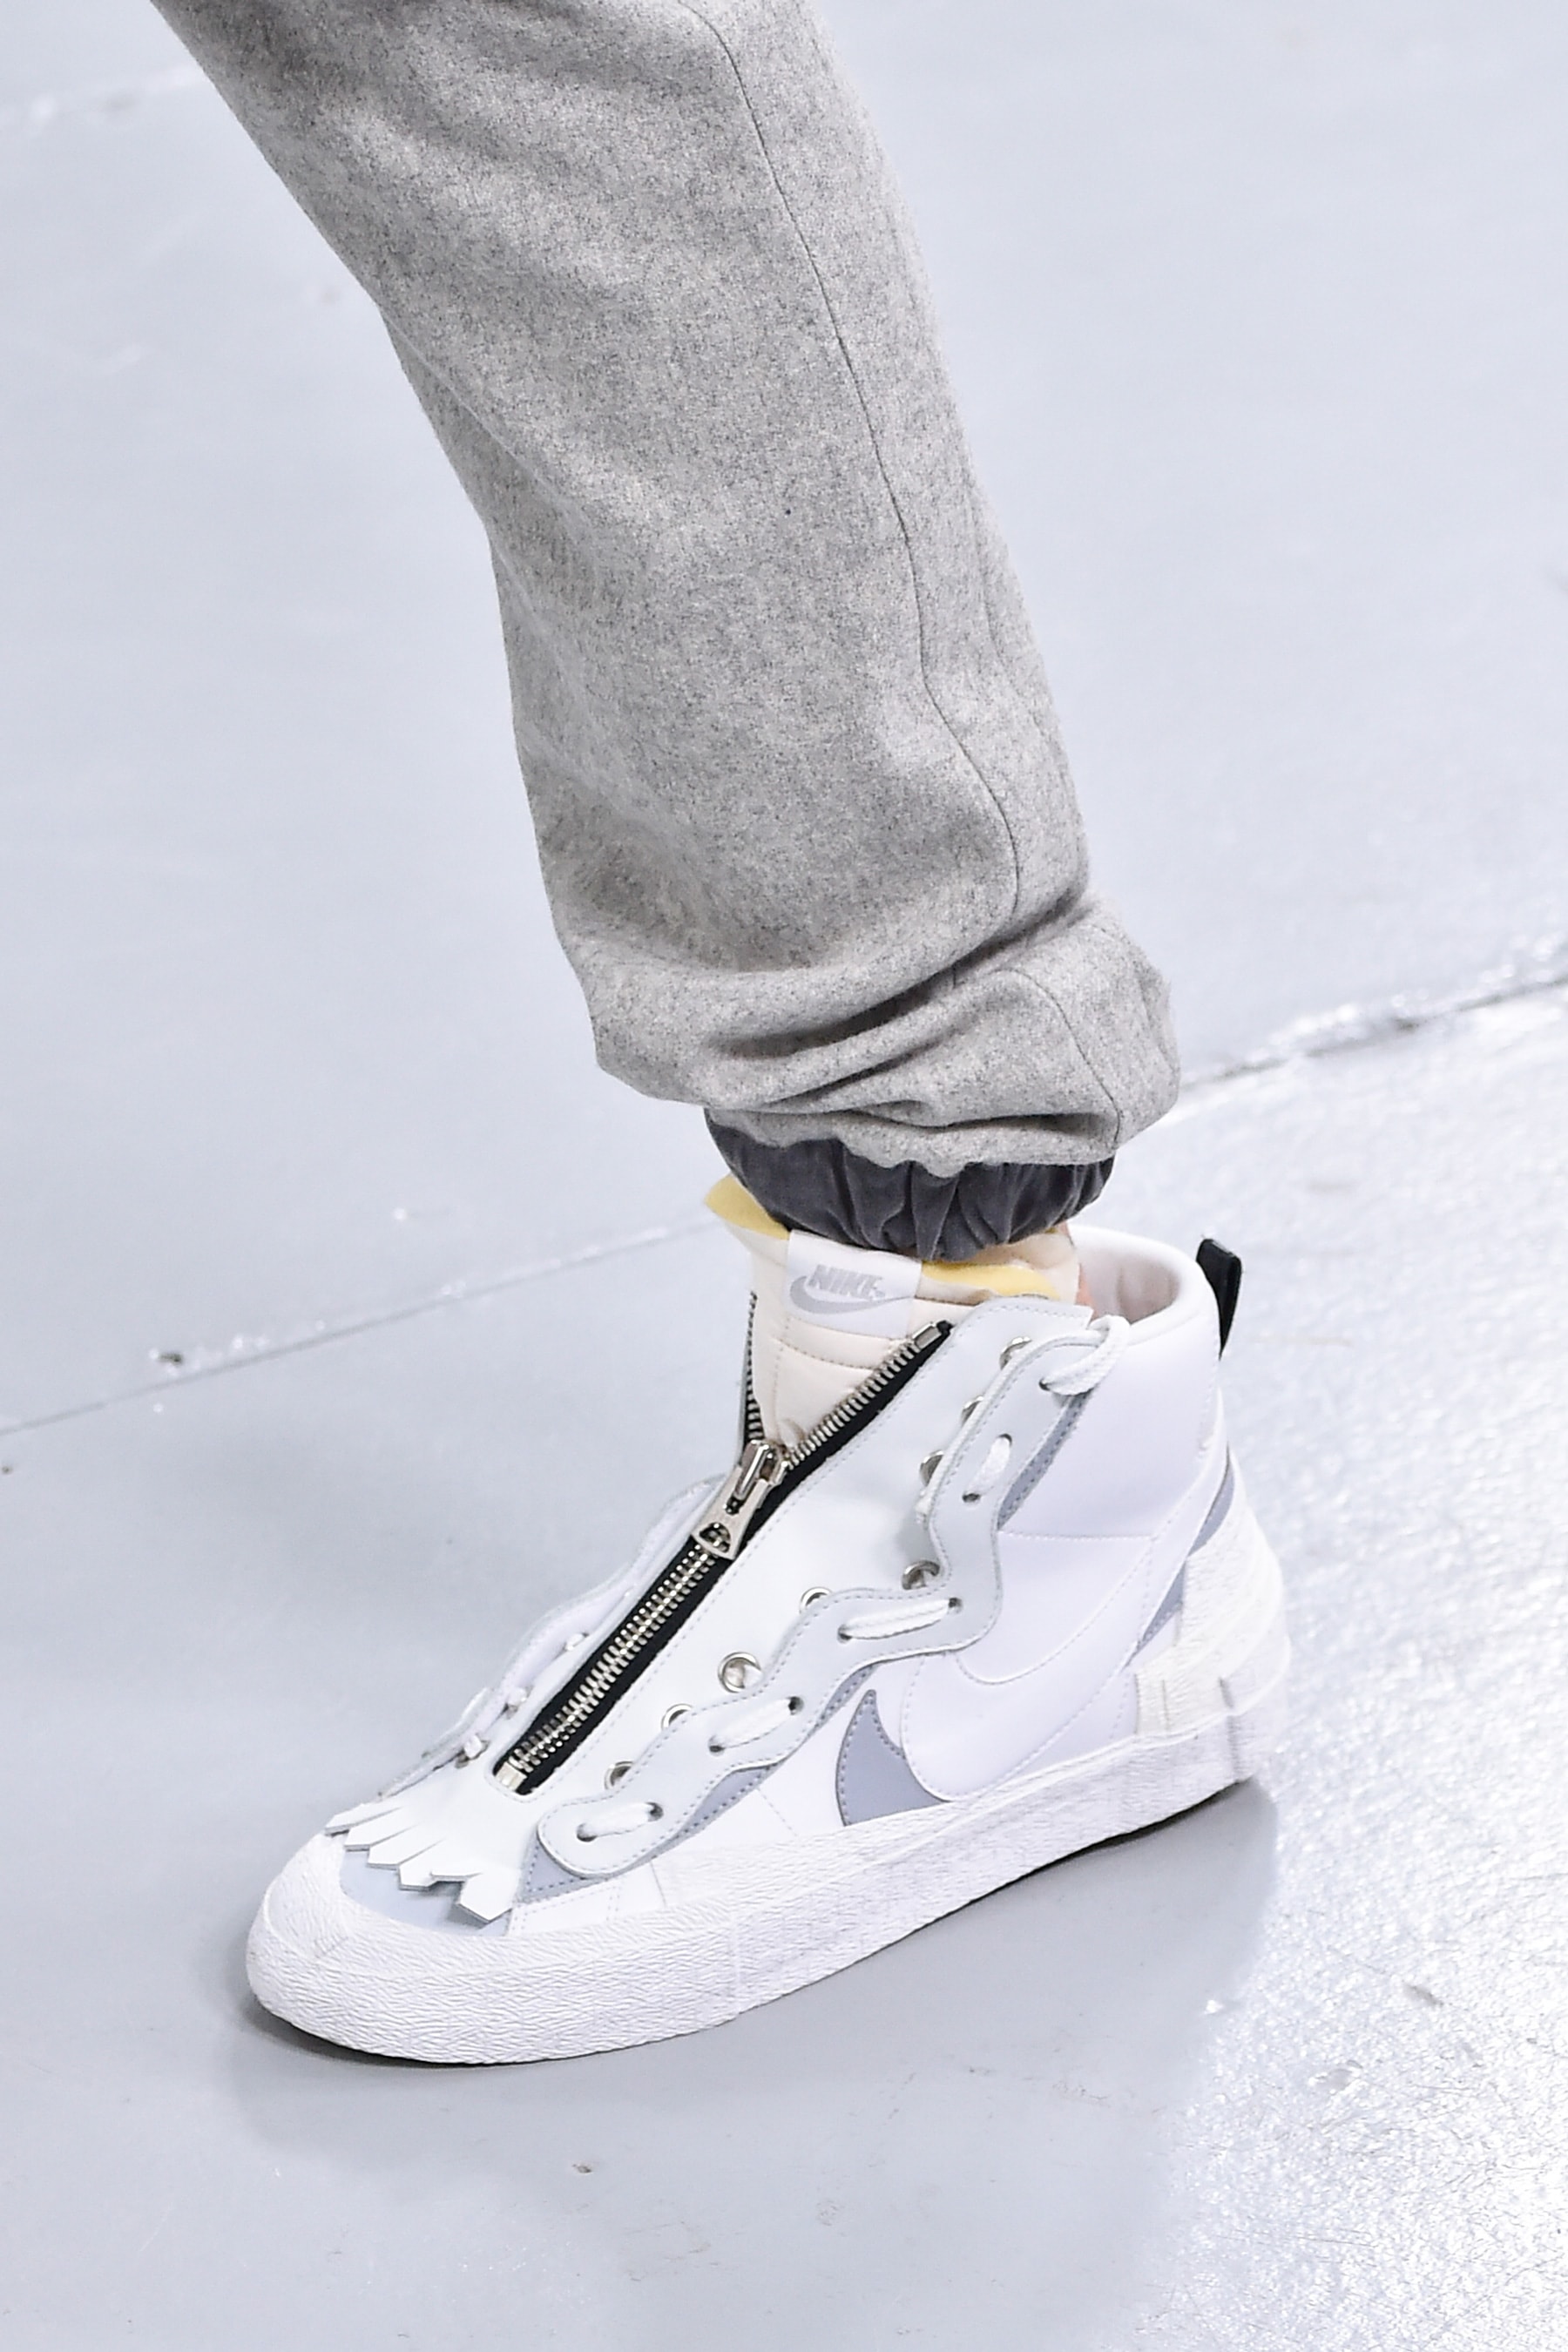 サカイ sacai ナイキ が2019年秋冬コレクションにて Nike との最新コラボフットウェアをお披露目